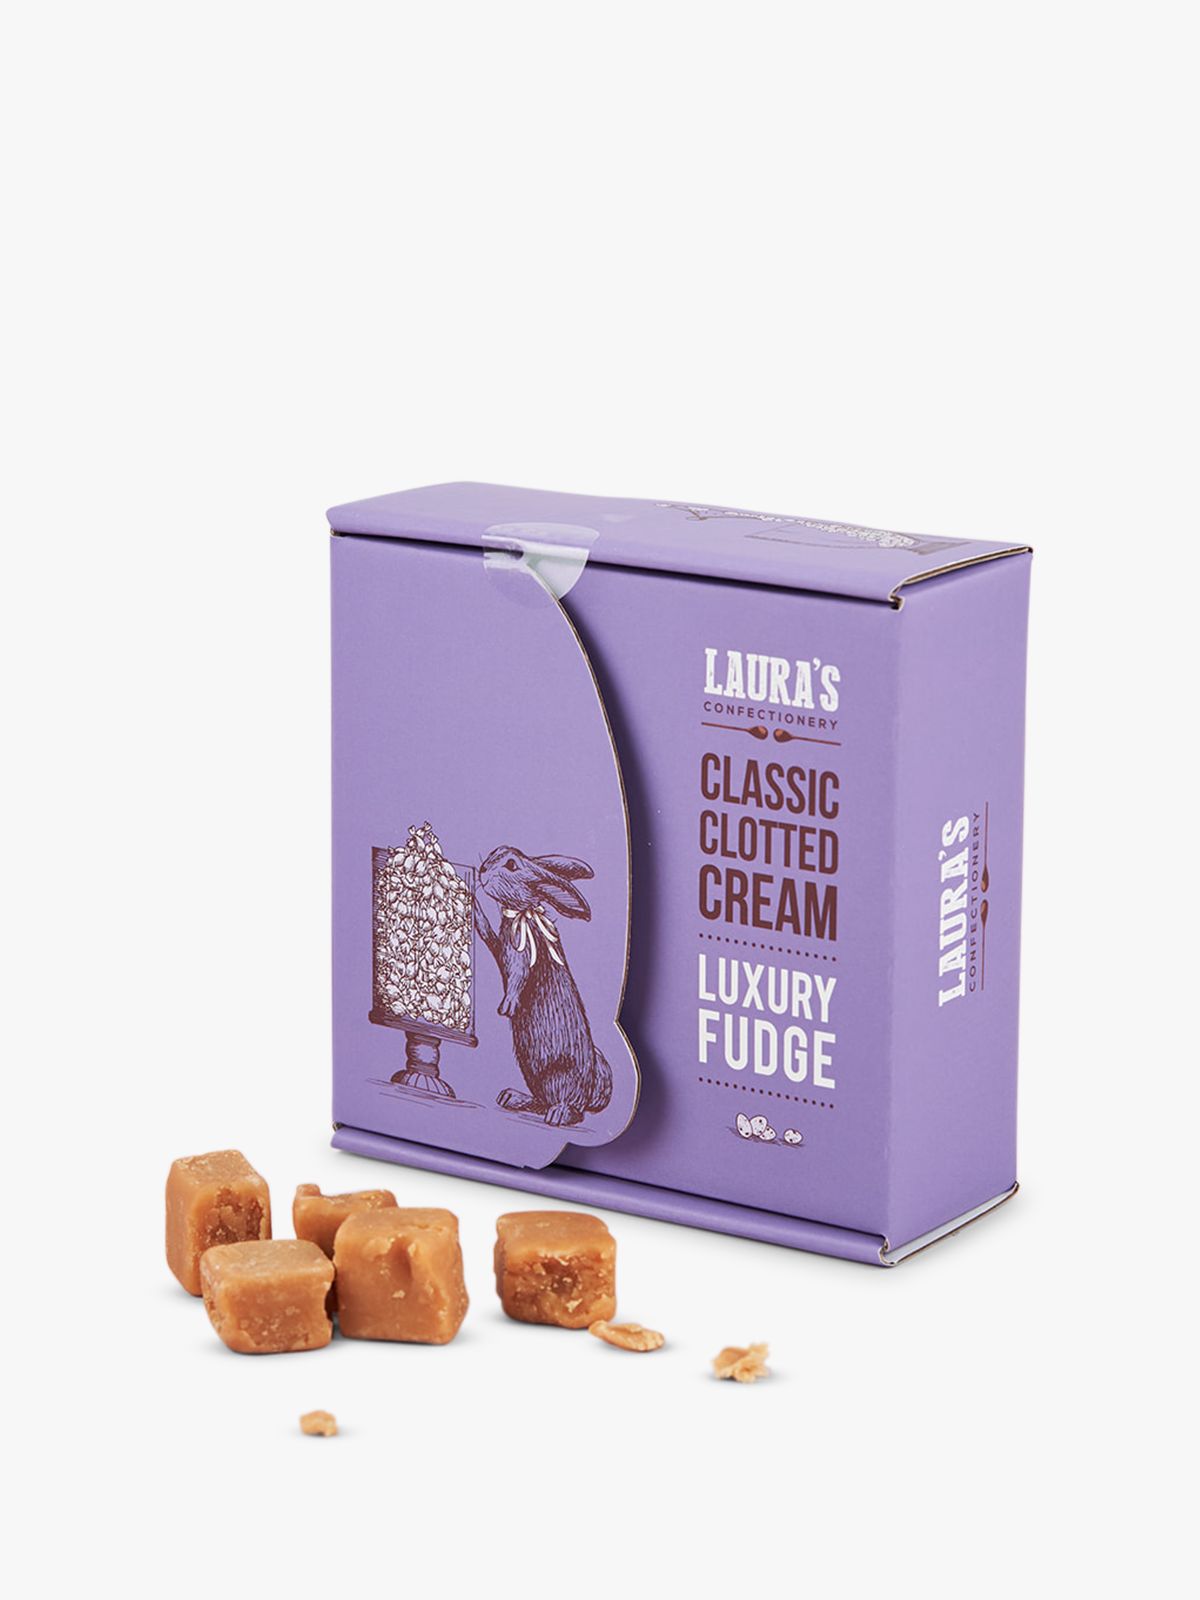 Laura's Confectionery Classic Clotted Cream Luxury Fudge, 200g